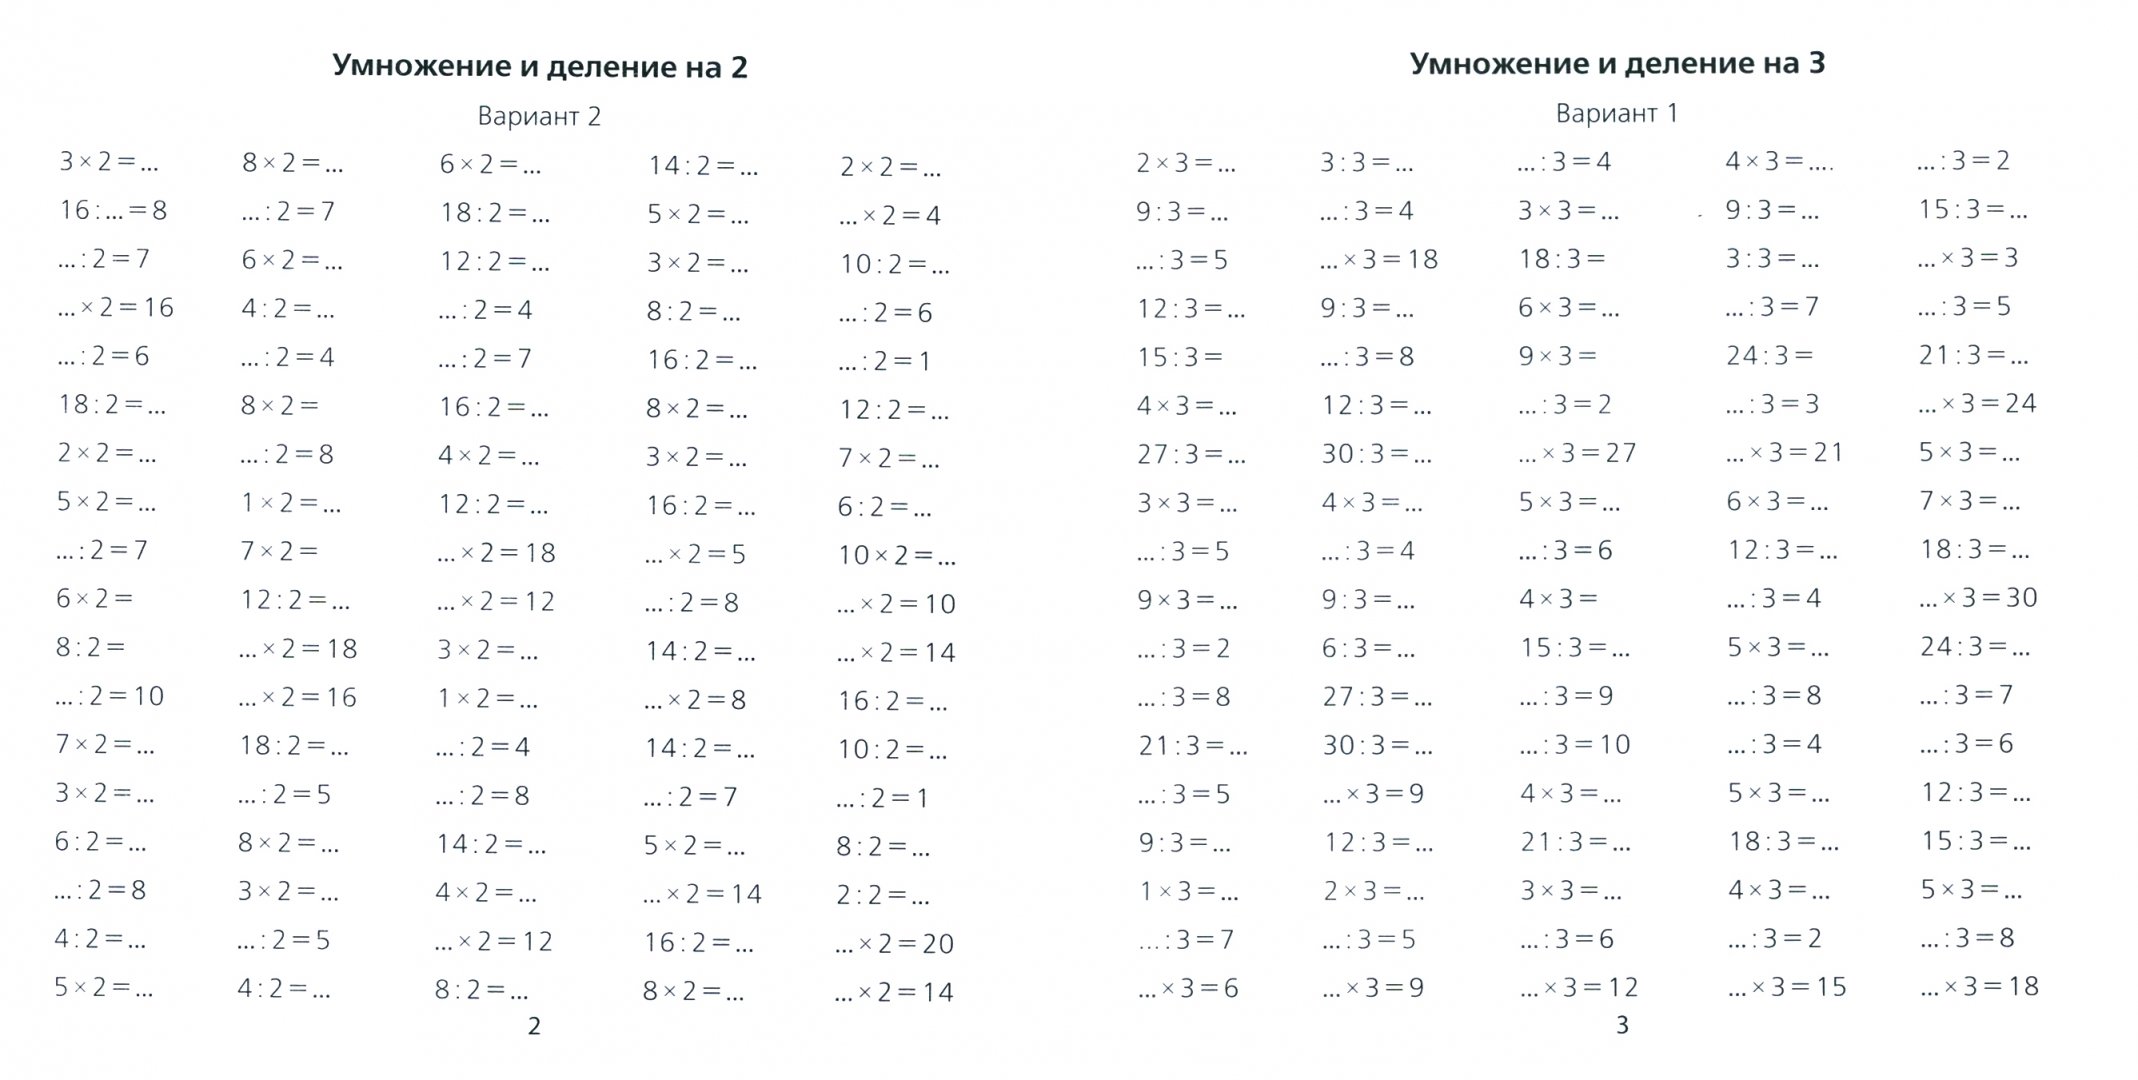 Карточки табличное умножение и деление 2 класс. Тренажер таблица умножения и деления на 2 3 4. Таблица умножения и деления на 2 тренажер. Умножение и деление на 3 и 4 тренажер. Карточка таблица умножения и деления 3 класс.